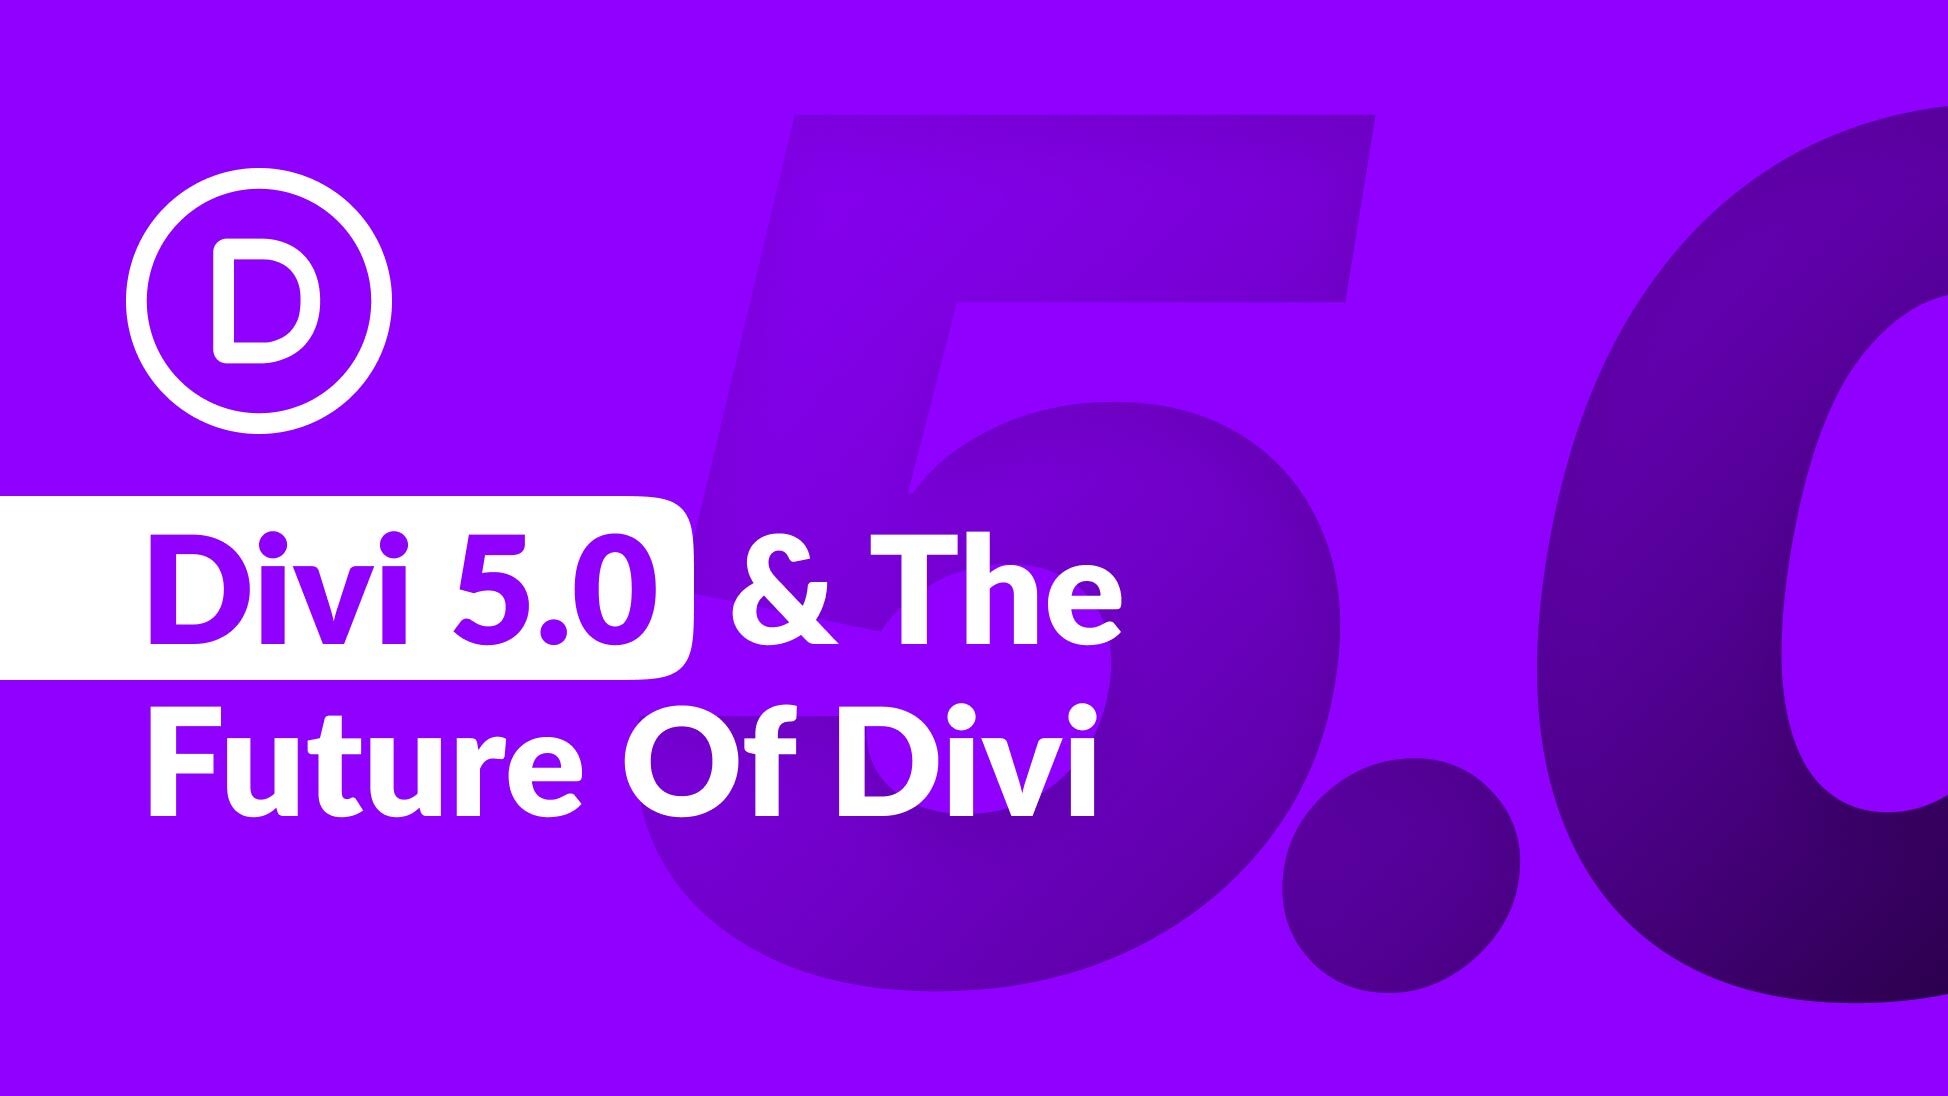 بیایید در مورد Divi 5.0 و آینده Divi صحبت کنیم